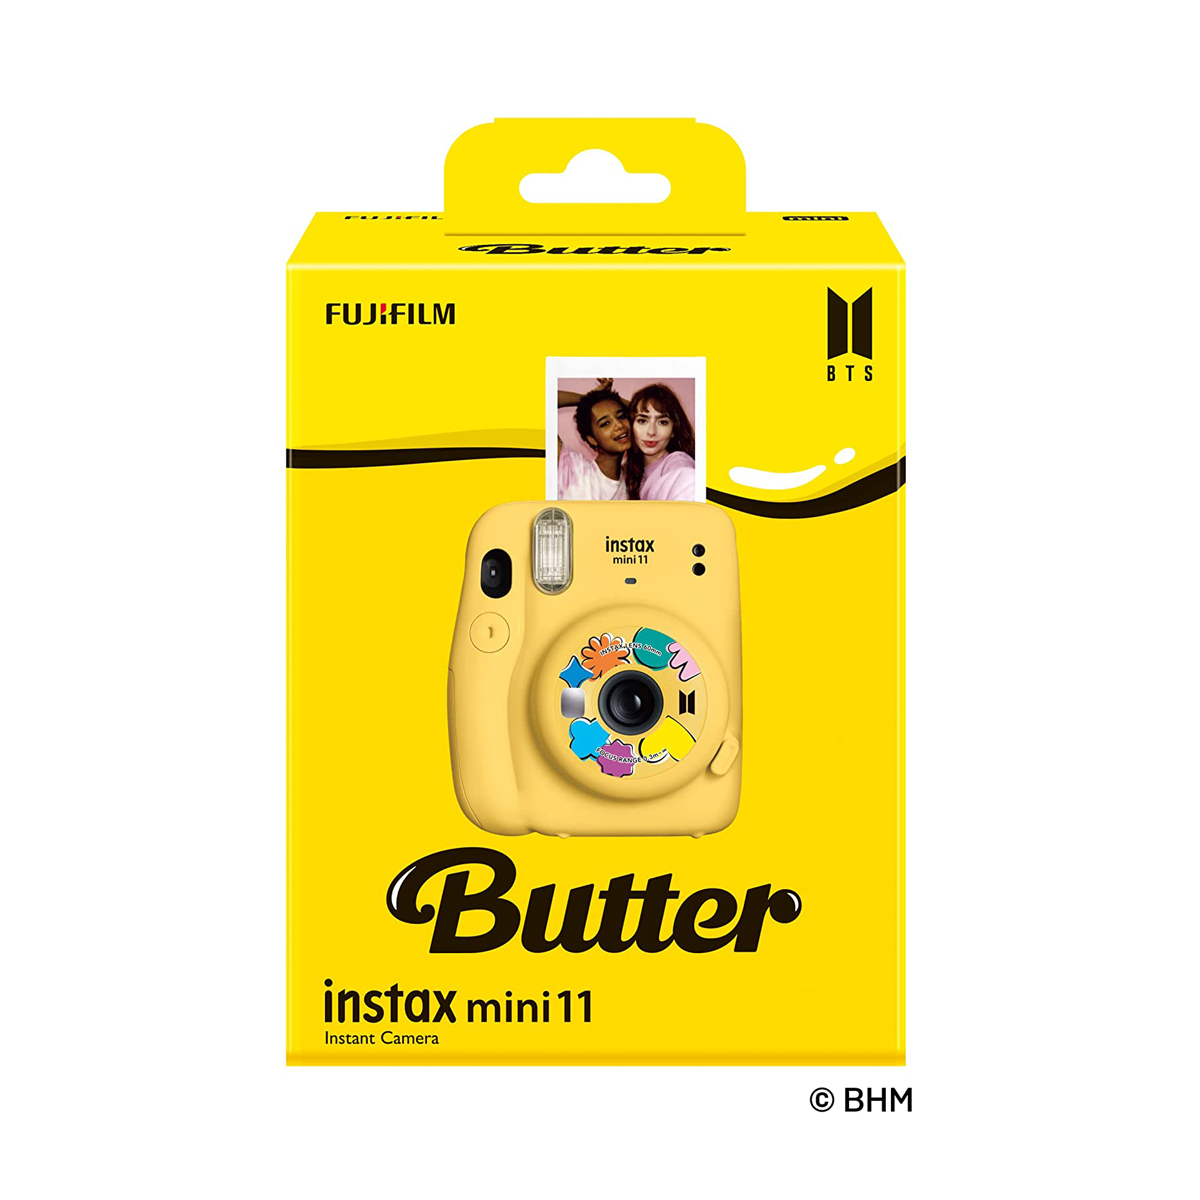 Instax Mini 11 BTS Butter